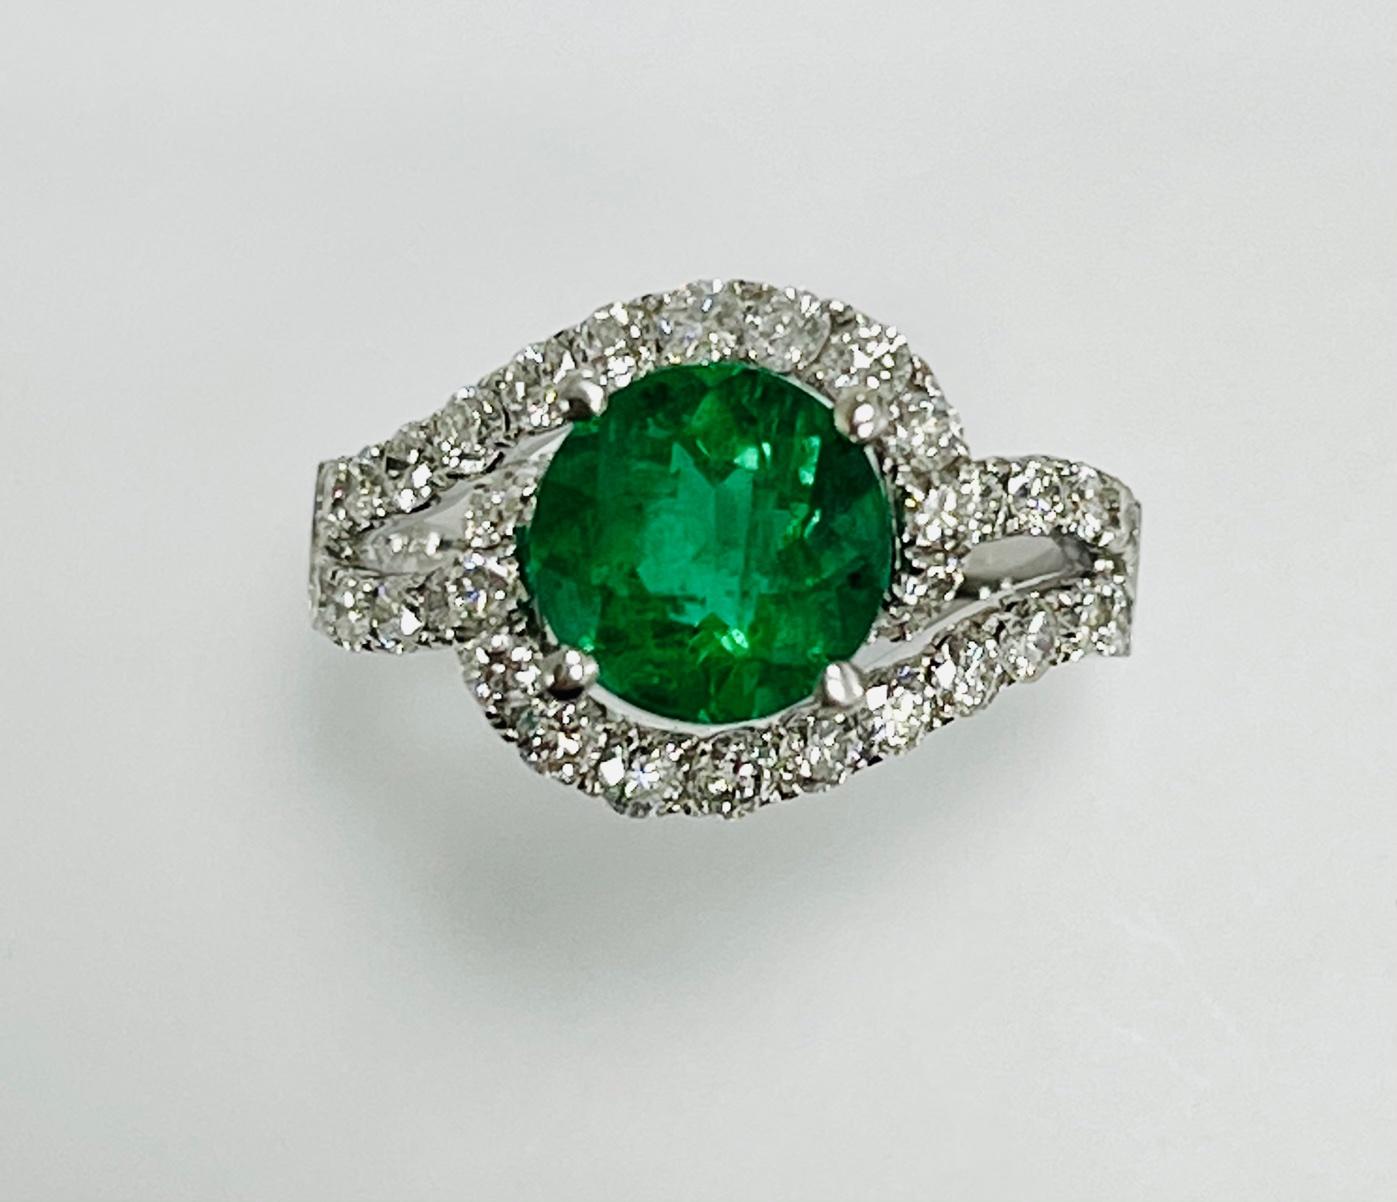 1.88 Karat Sambia runde Form Smaragd in 18k Weißgold Ring mit 1,21 Karat Diamanten um ihn herum und auf halbem Weg auf den Split-Schaft gesetzt.